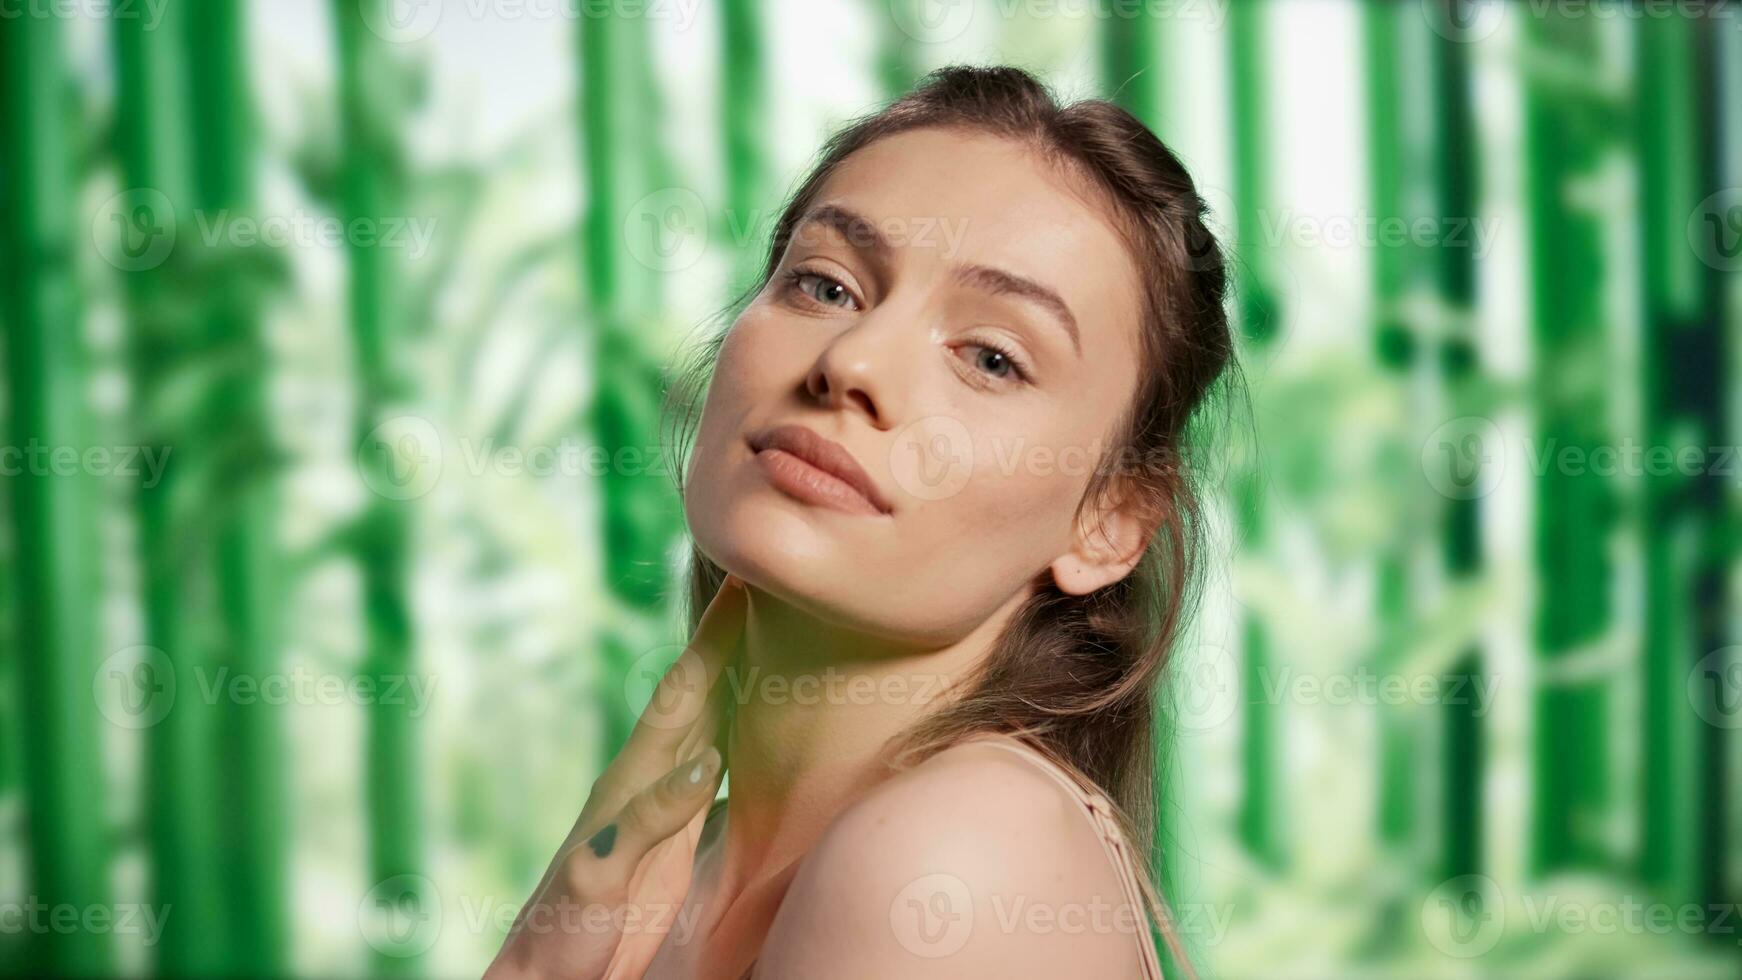 jung sanft Frau posieren Über Bambus Bäume Hintergrund, fördern Schönheit Kosmetika zum Hautpflege Anzeige Kampagne. positiv zuversichtlich Dame Werbung leuchtend und strahlend sehen, Körperpflege Produkte. foto